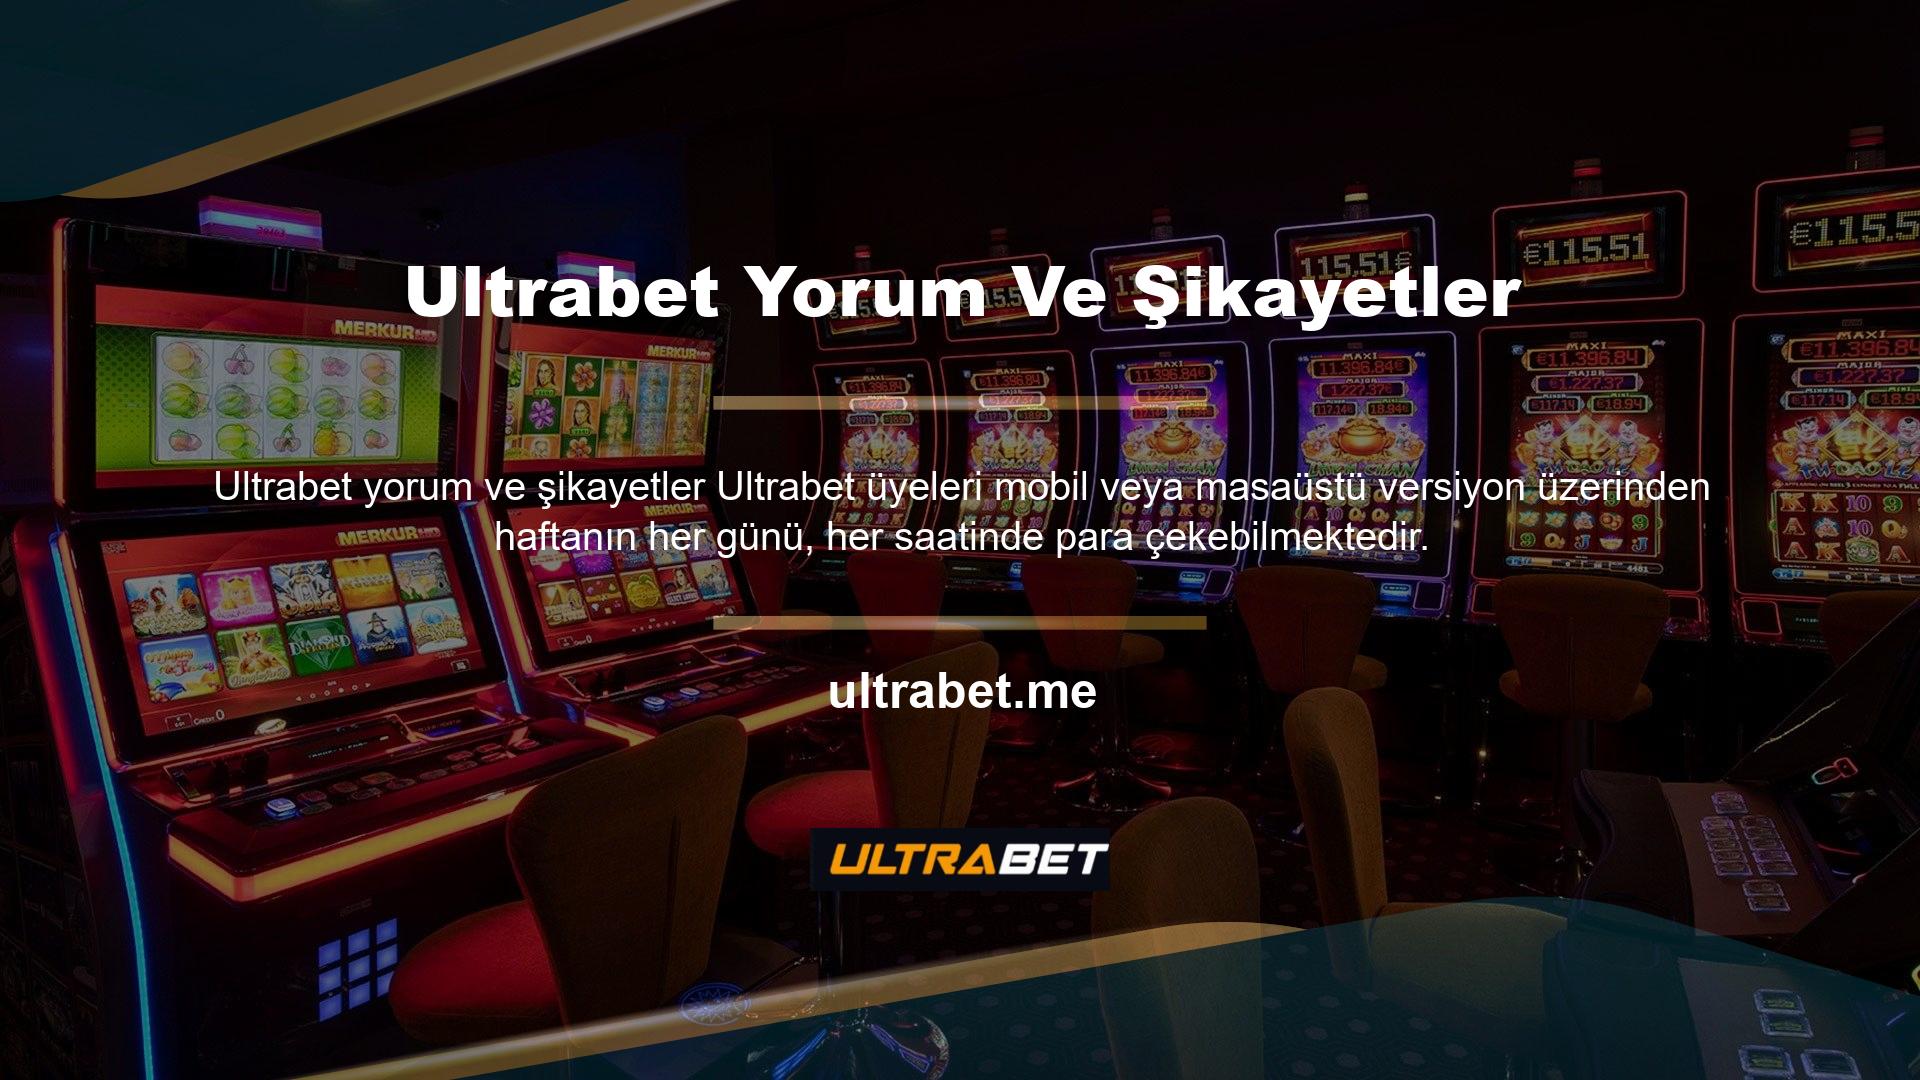 Ultrabet web sitesi üyelere çeşitli özel vazgeçme seçenekleri sunar